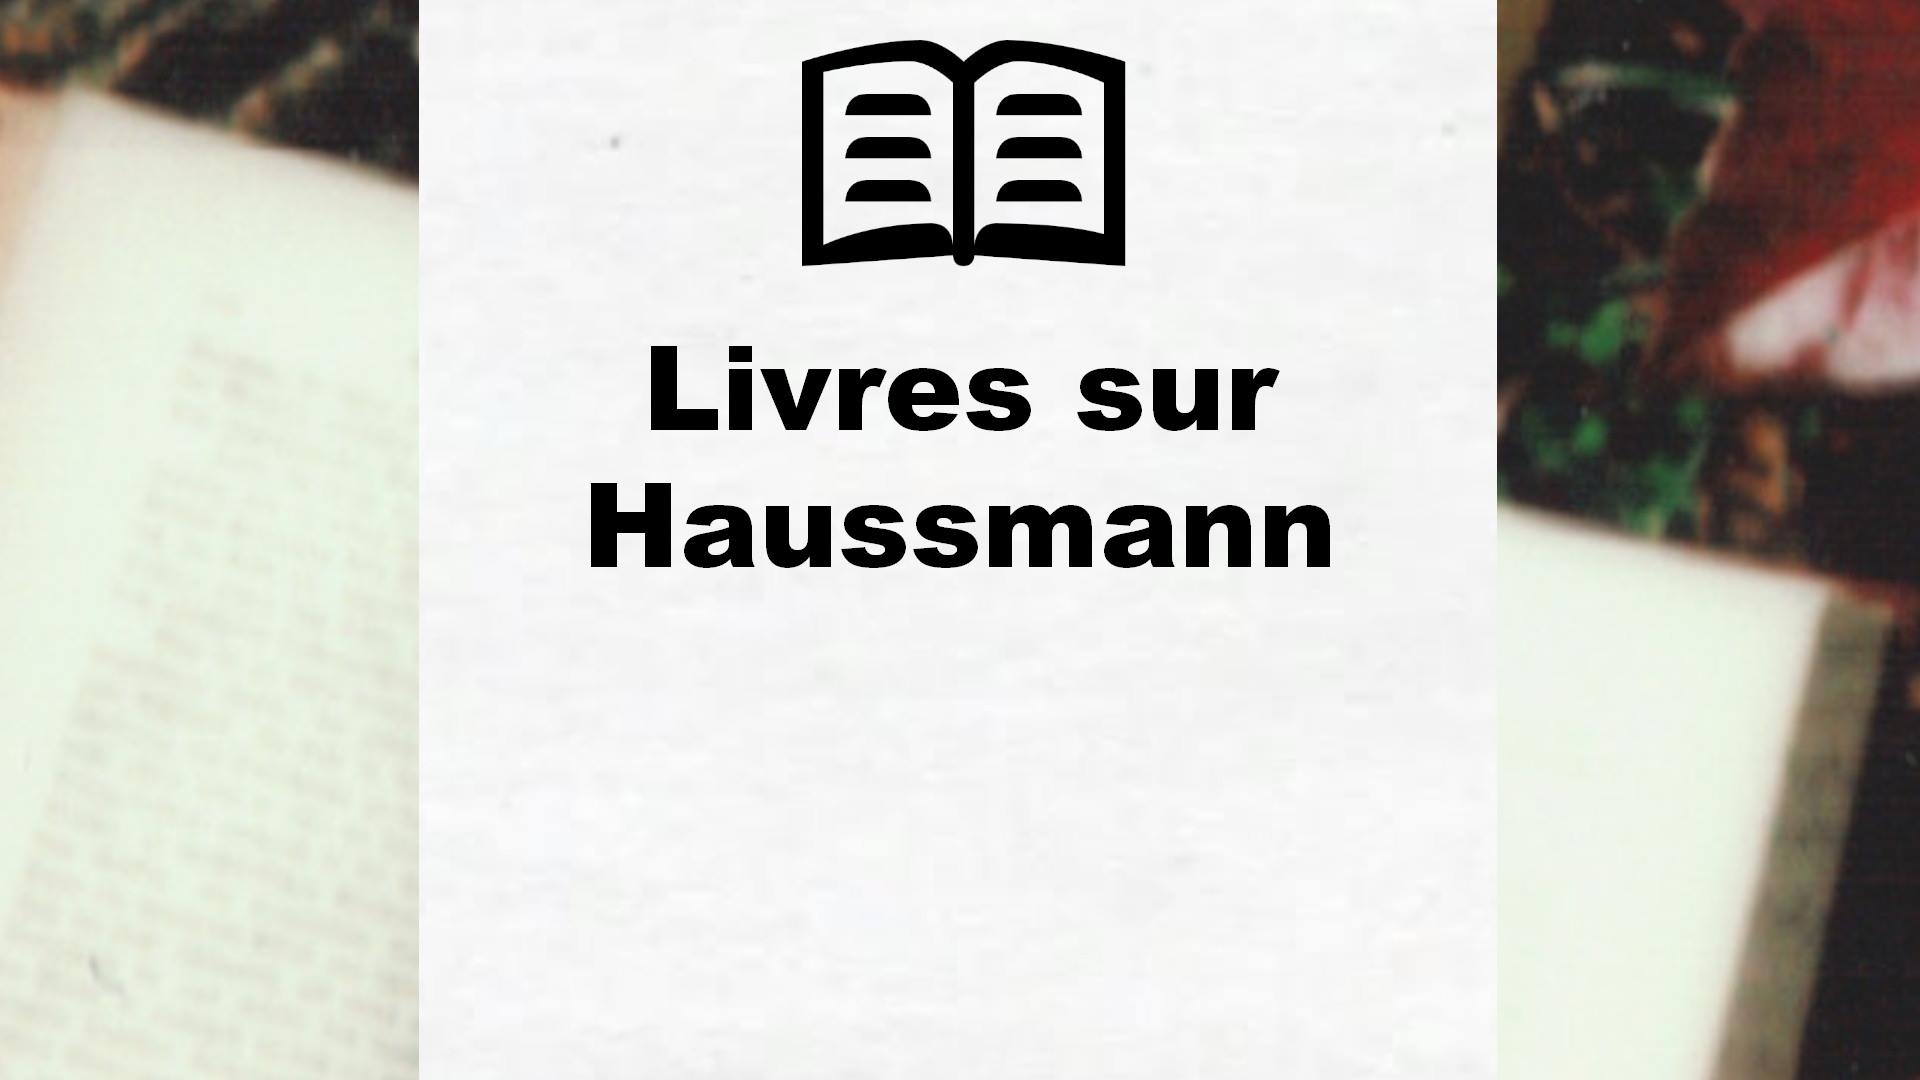 Livres sur Haussmann